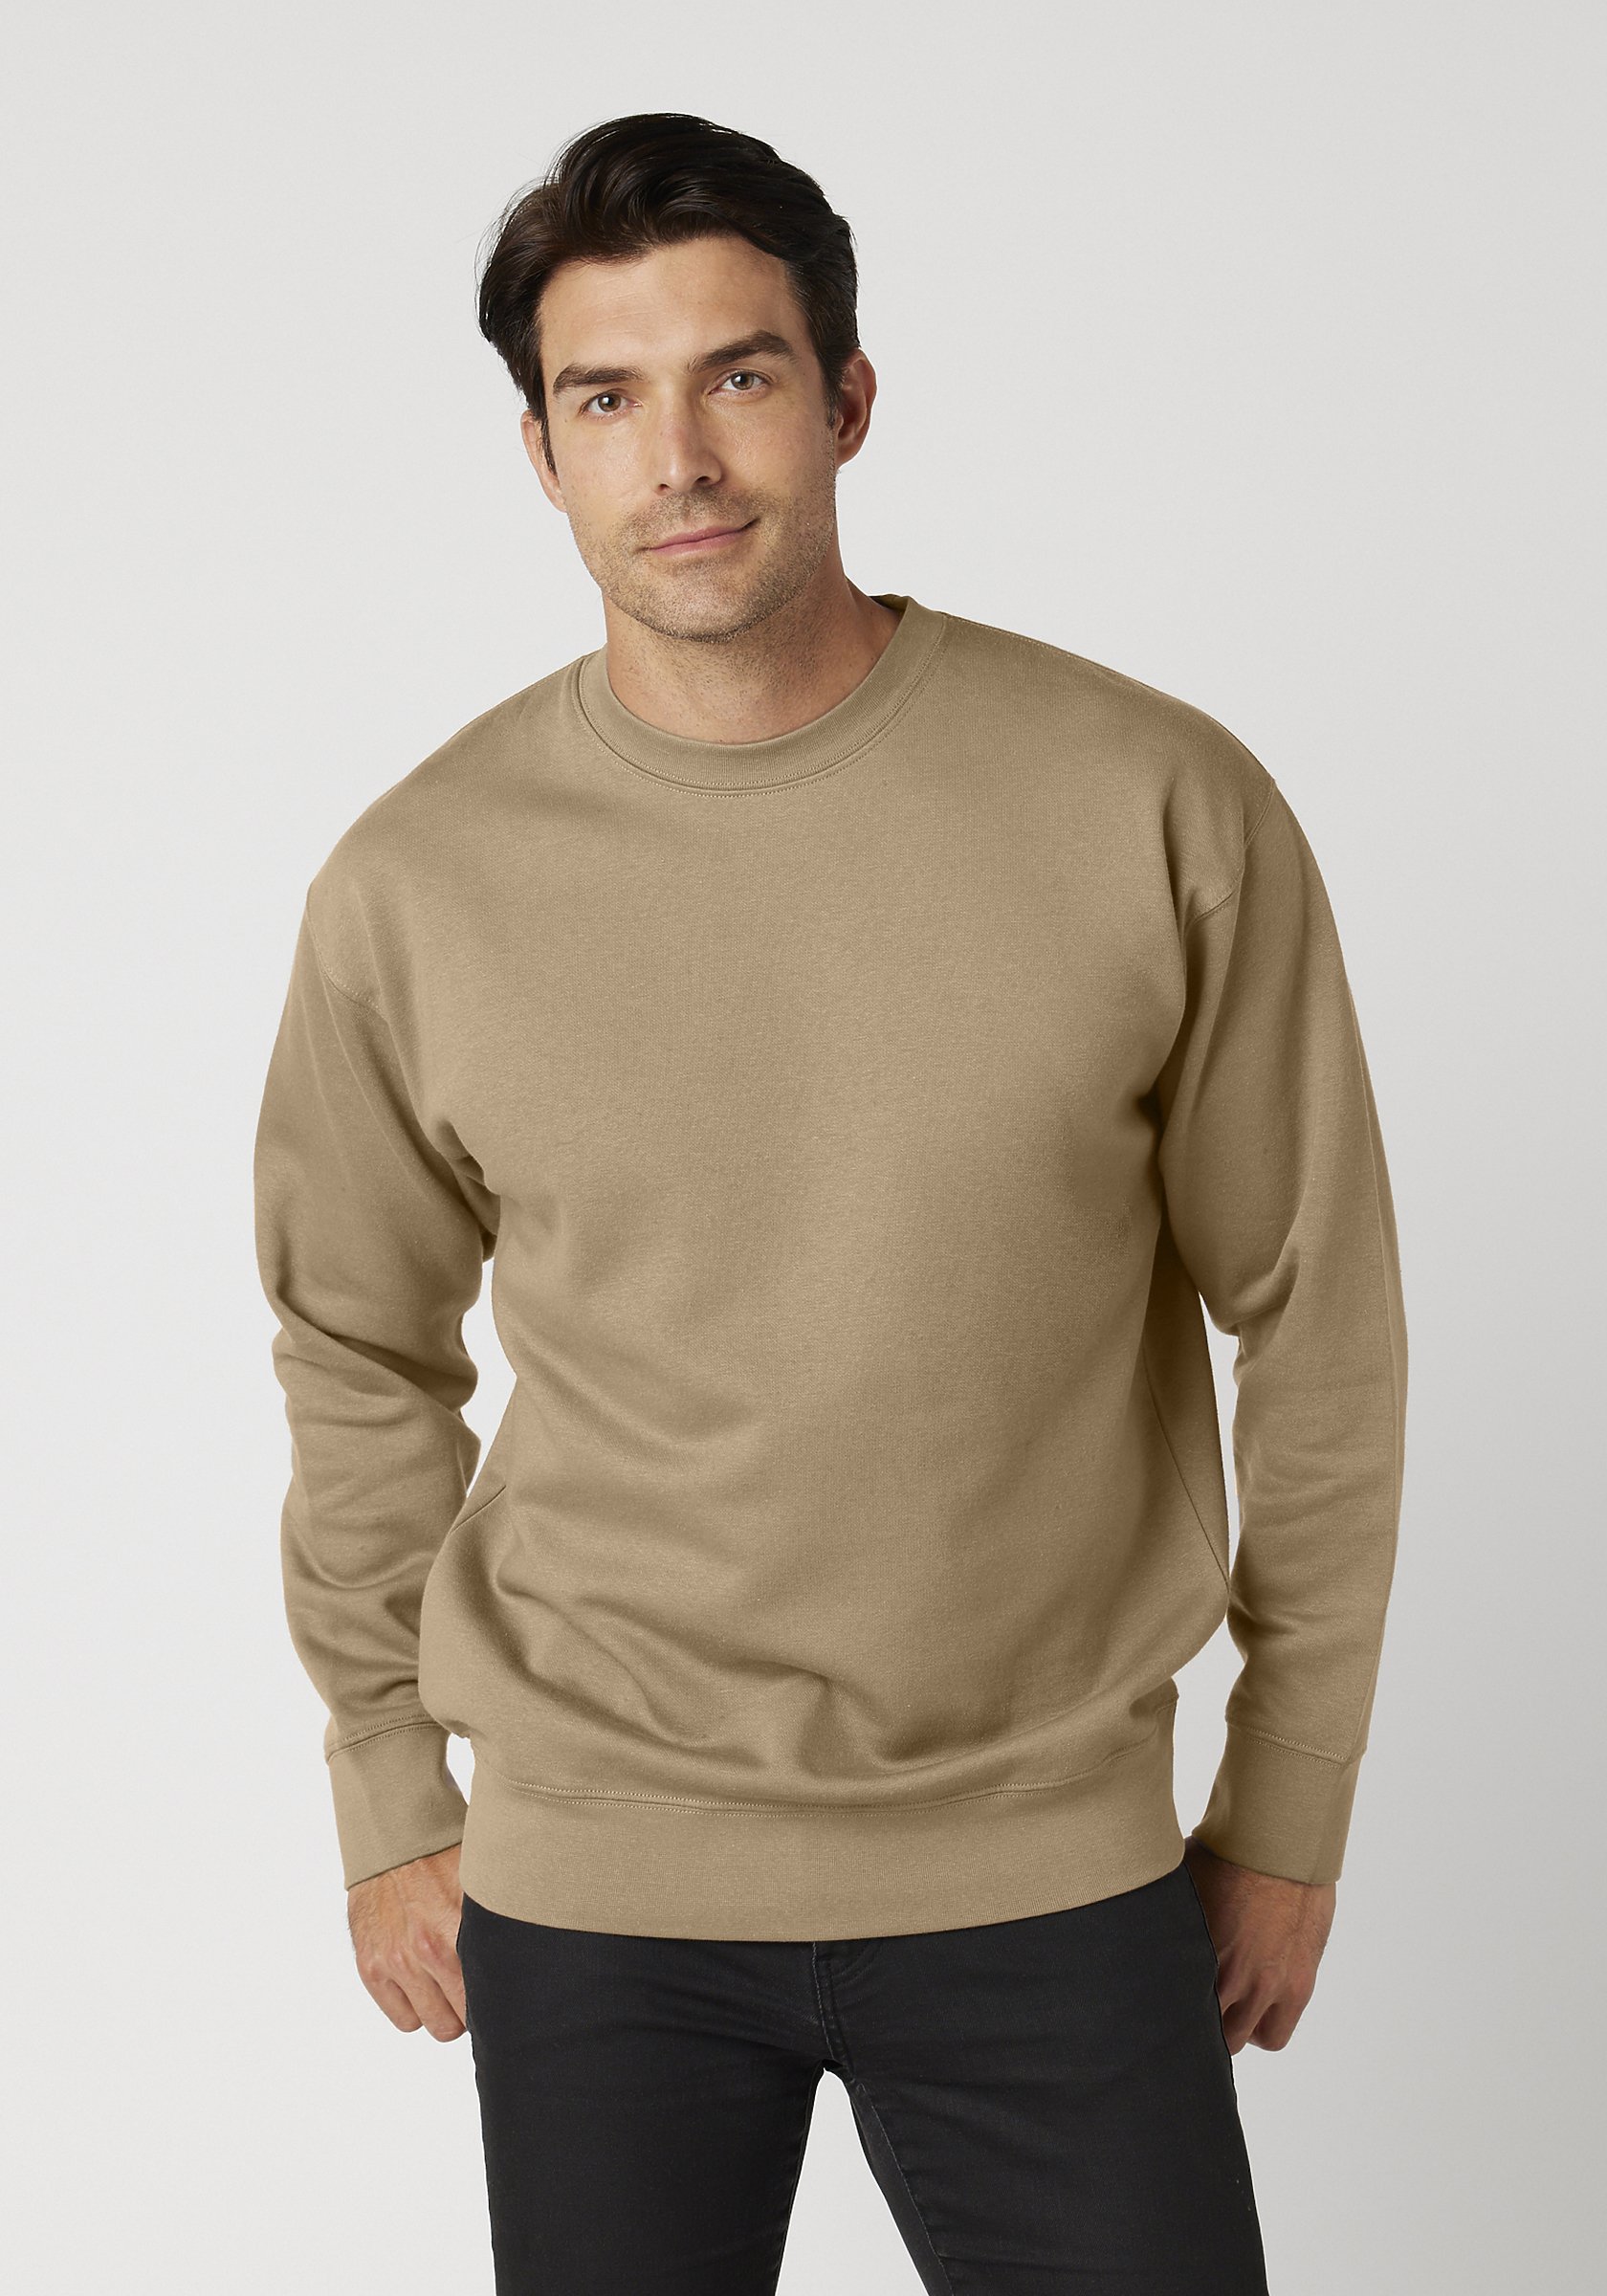 Mens 100% Heavy Cotton Crewneck Pullover Crew Sweatshirt